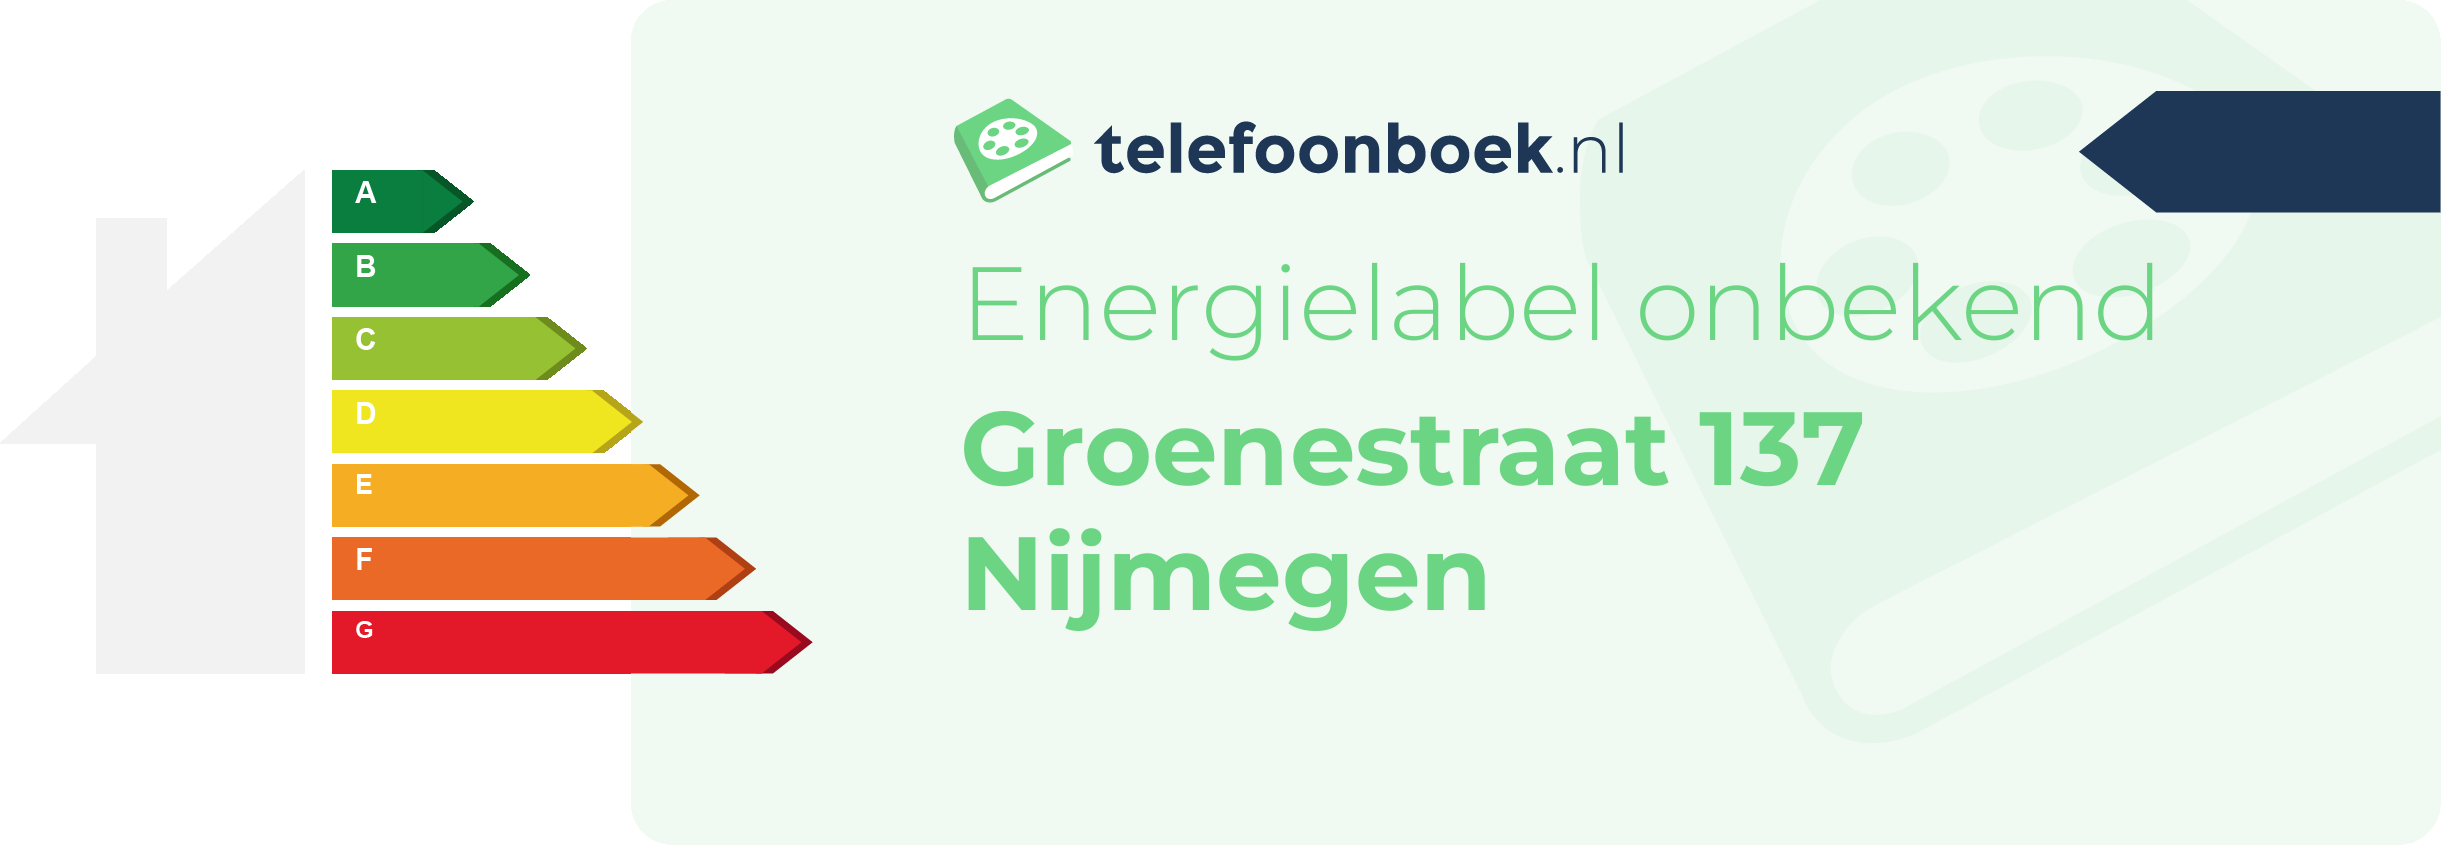 Energielabel Groenestraat 137 Nijmegen